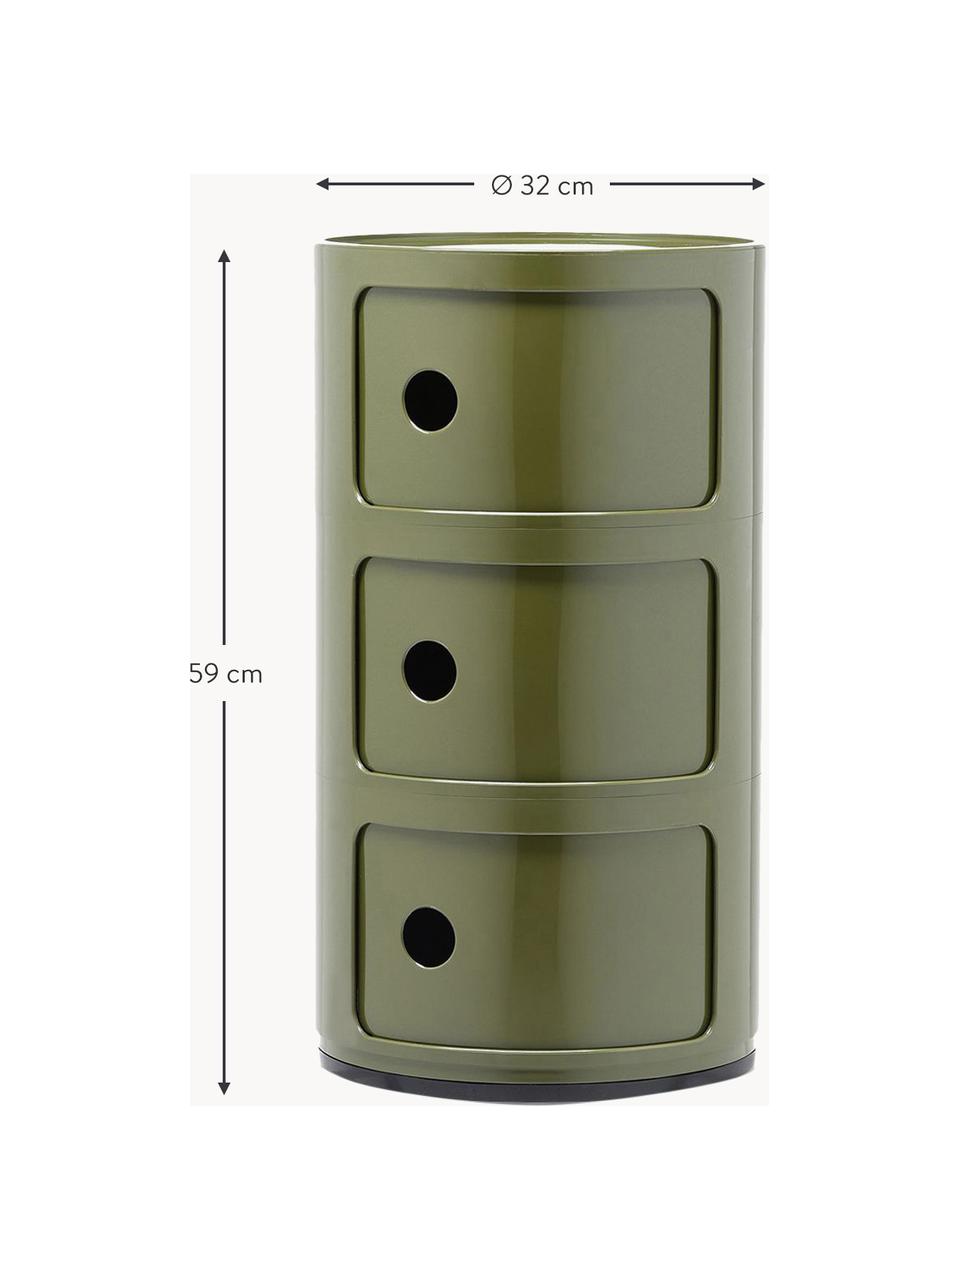 Stolik pomocniczy Componibili, 3 moduły, Tworzywo sztuczne z certyfikatem Greenguard, Oliwkowy zielony, błyszczący, Ø 32 x W 59 cm